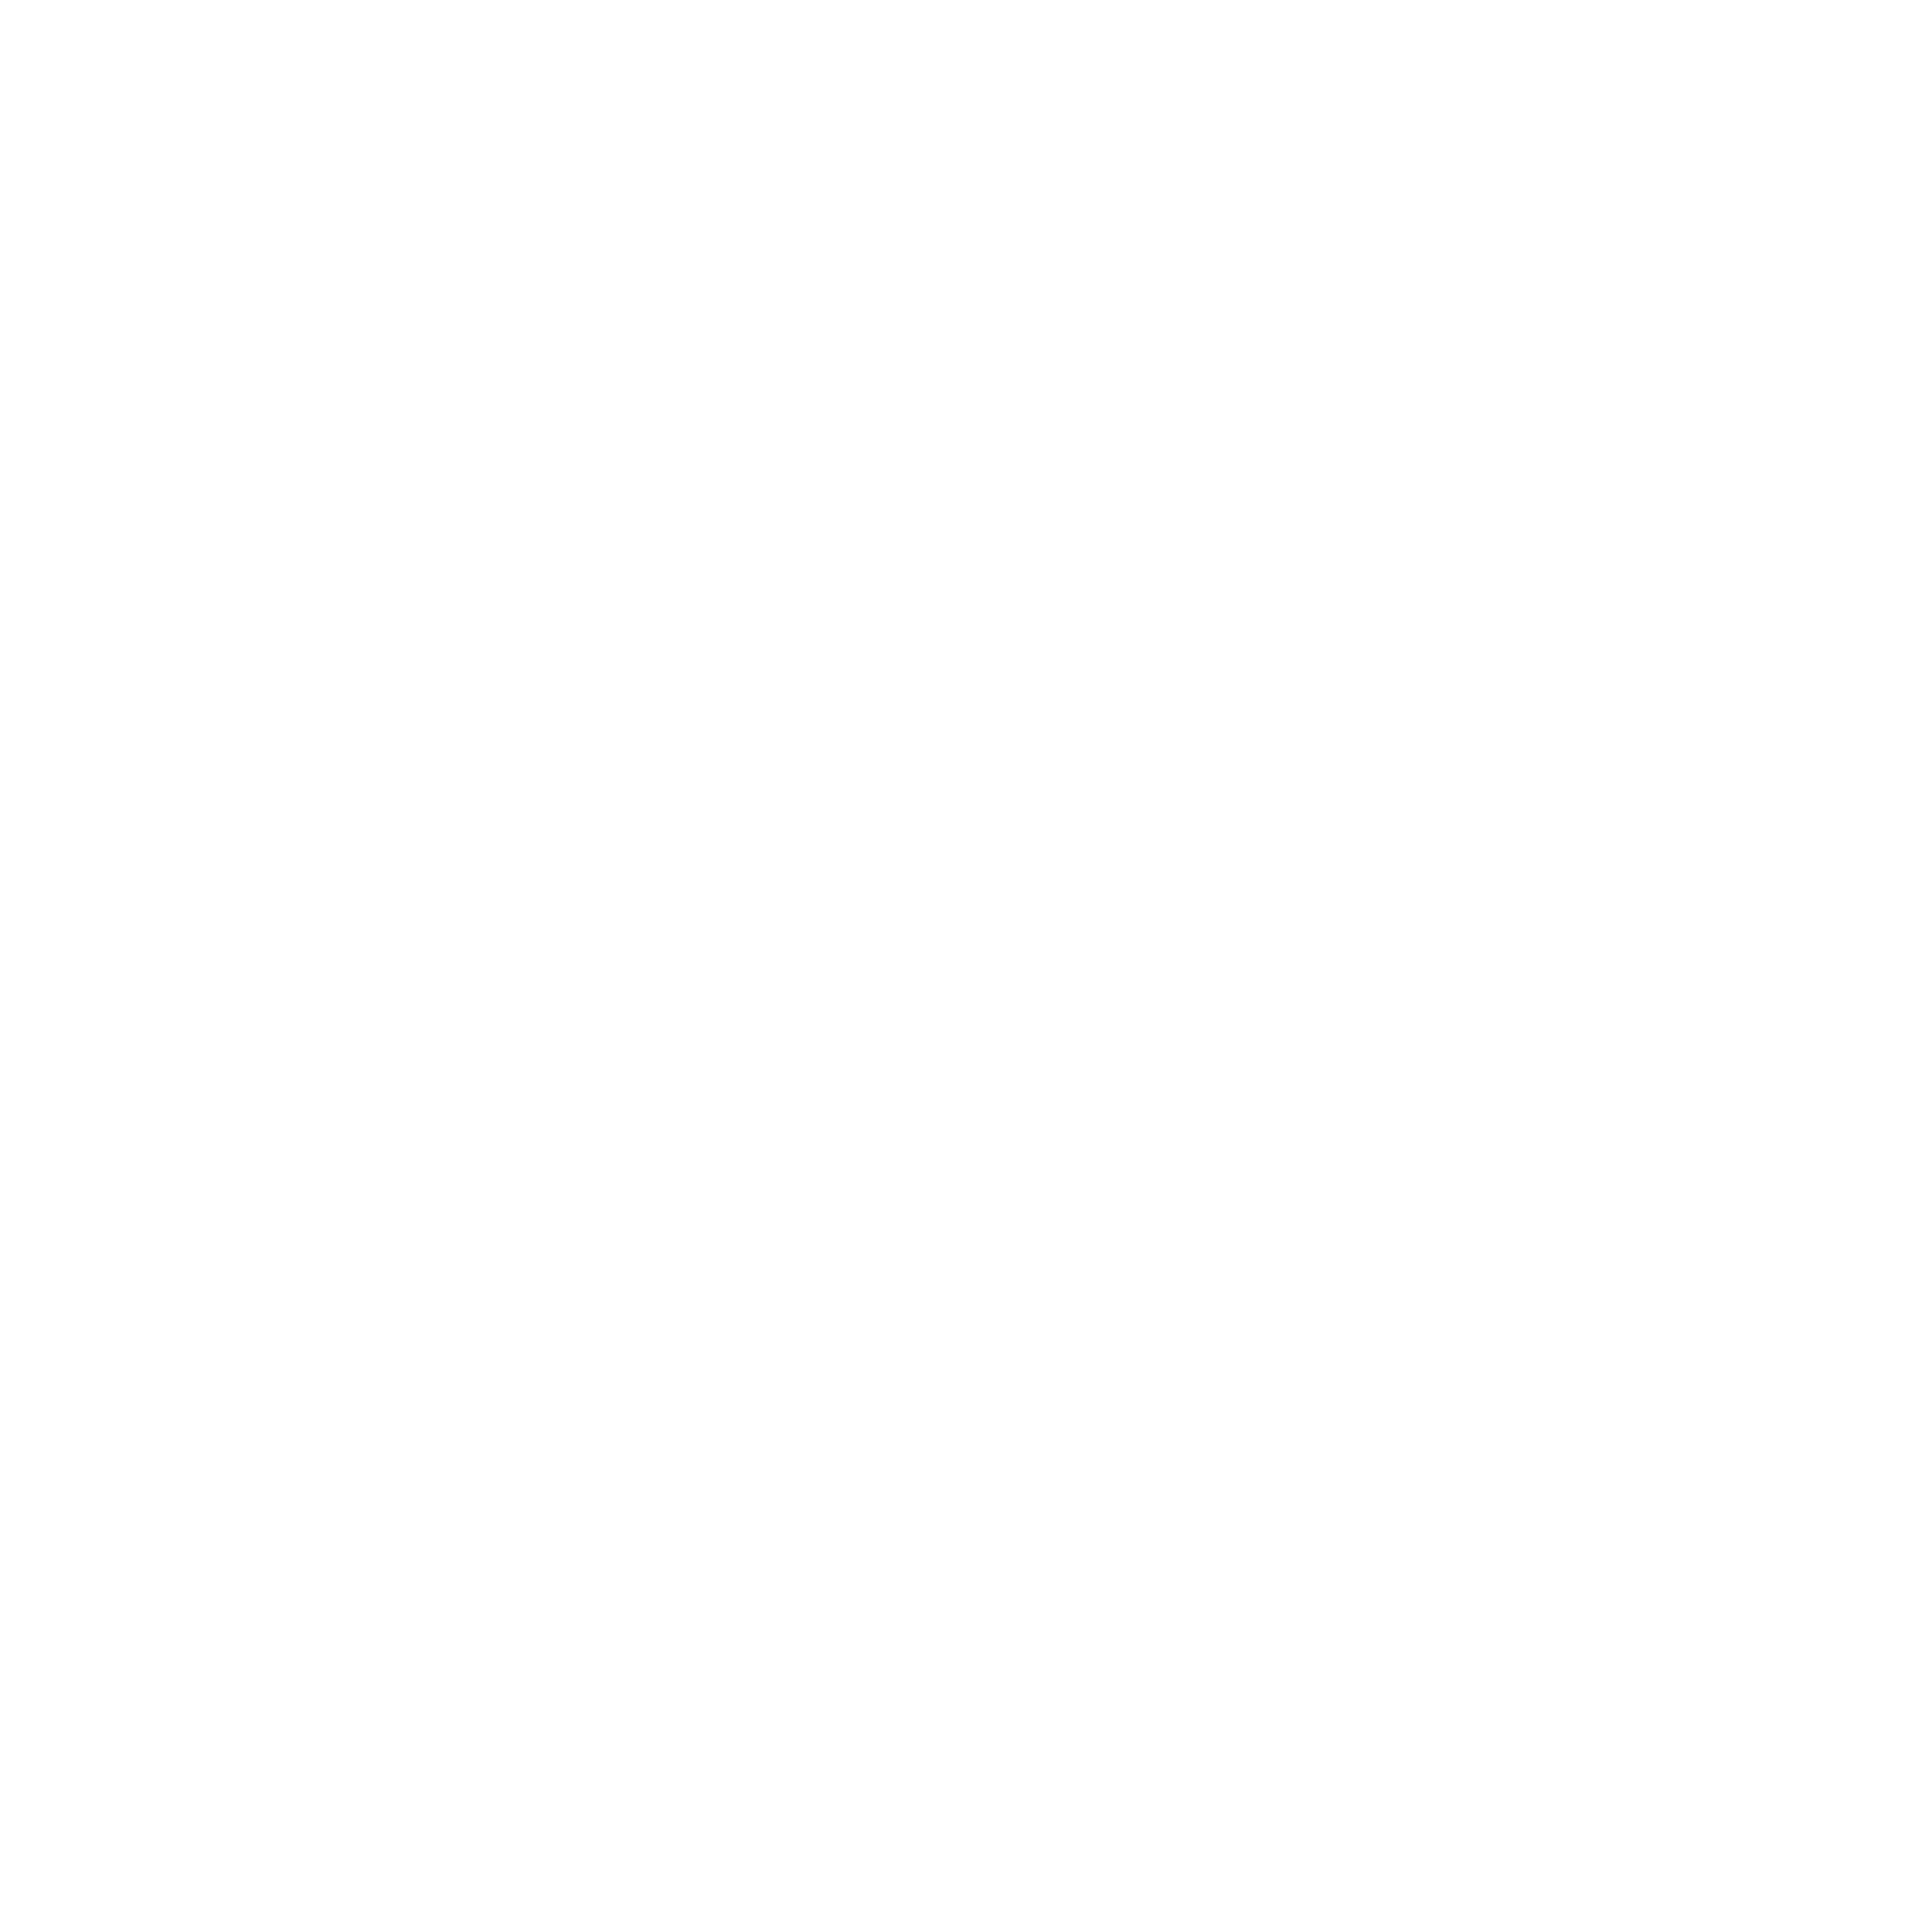 glaucus logo white